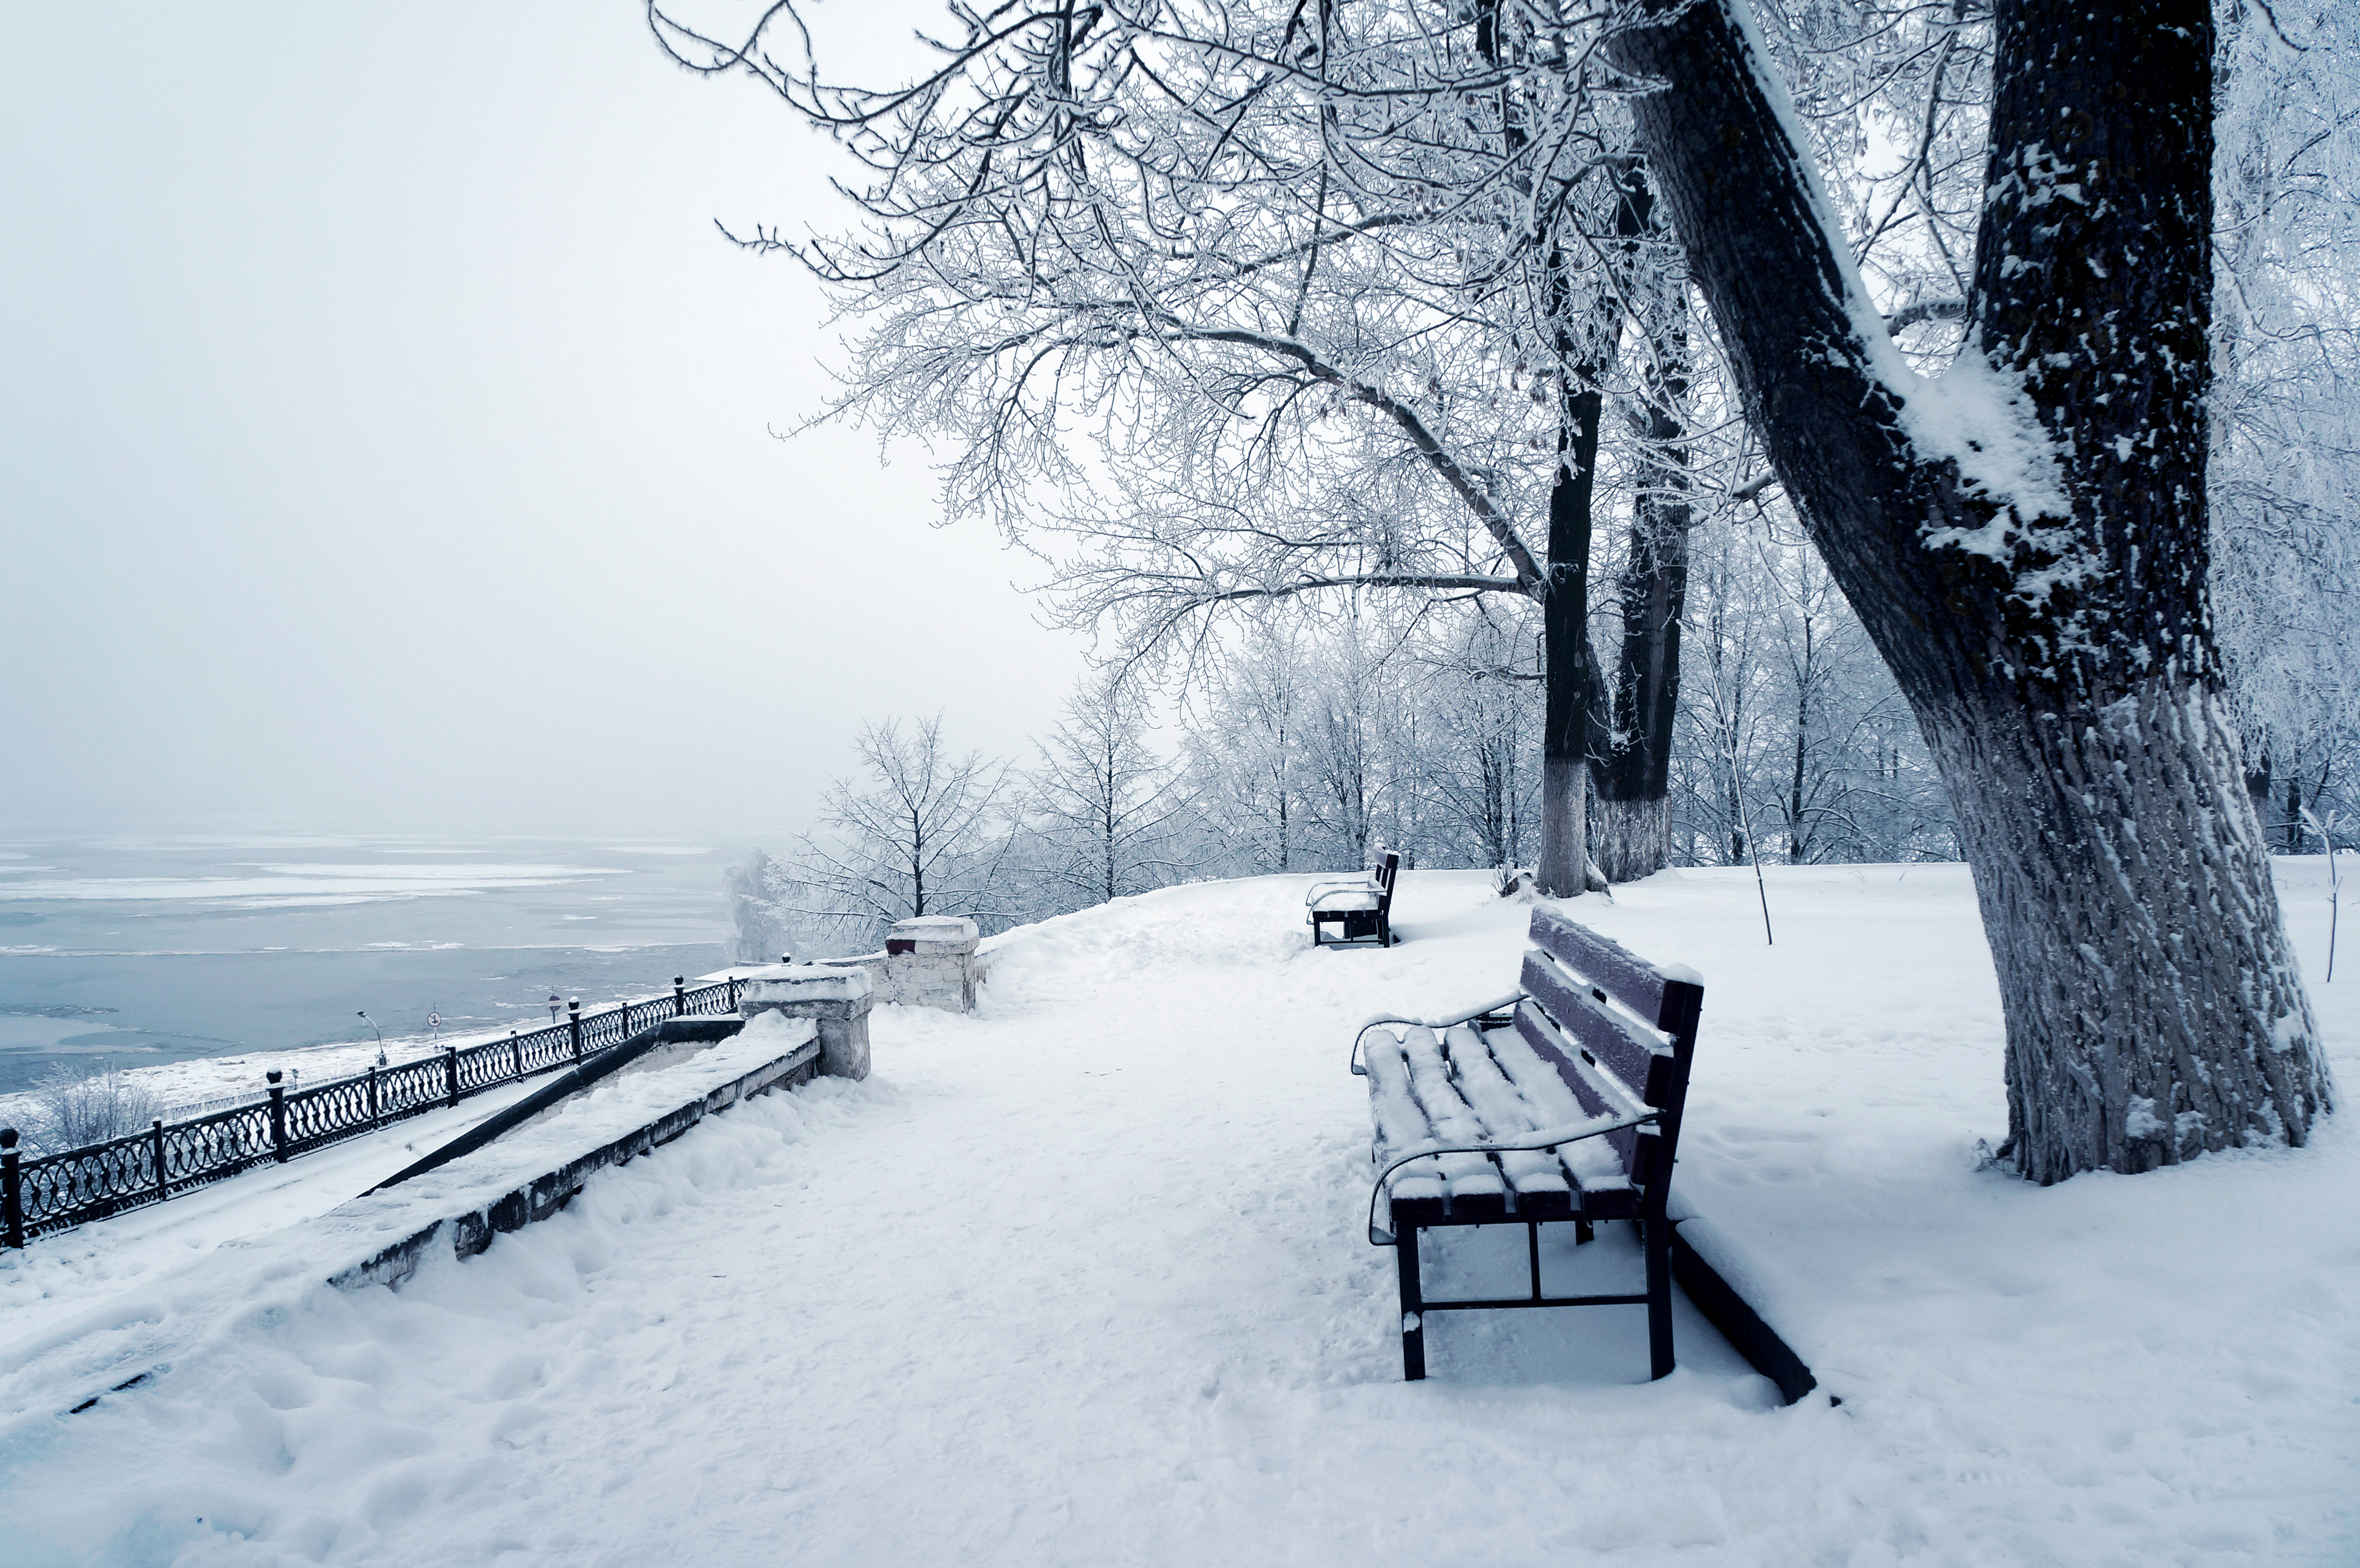 Скачать обои бесплатно Зима, Снег, Парк, Дерево, Скамья, Сделано Человеком картинка на рабочий стол ПК